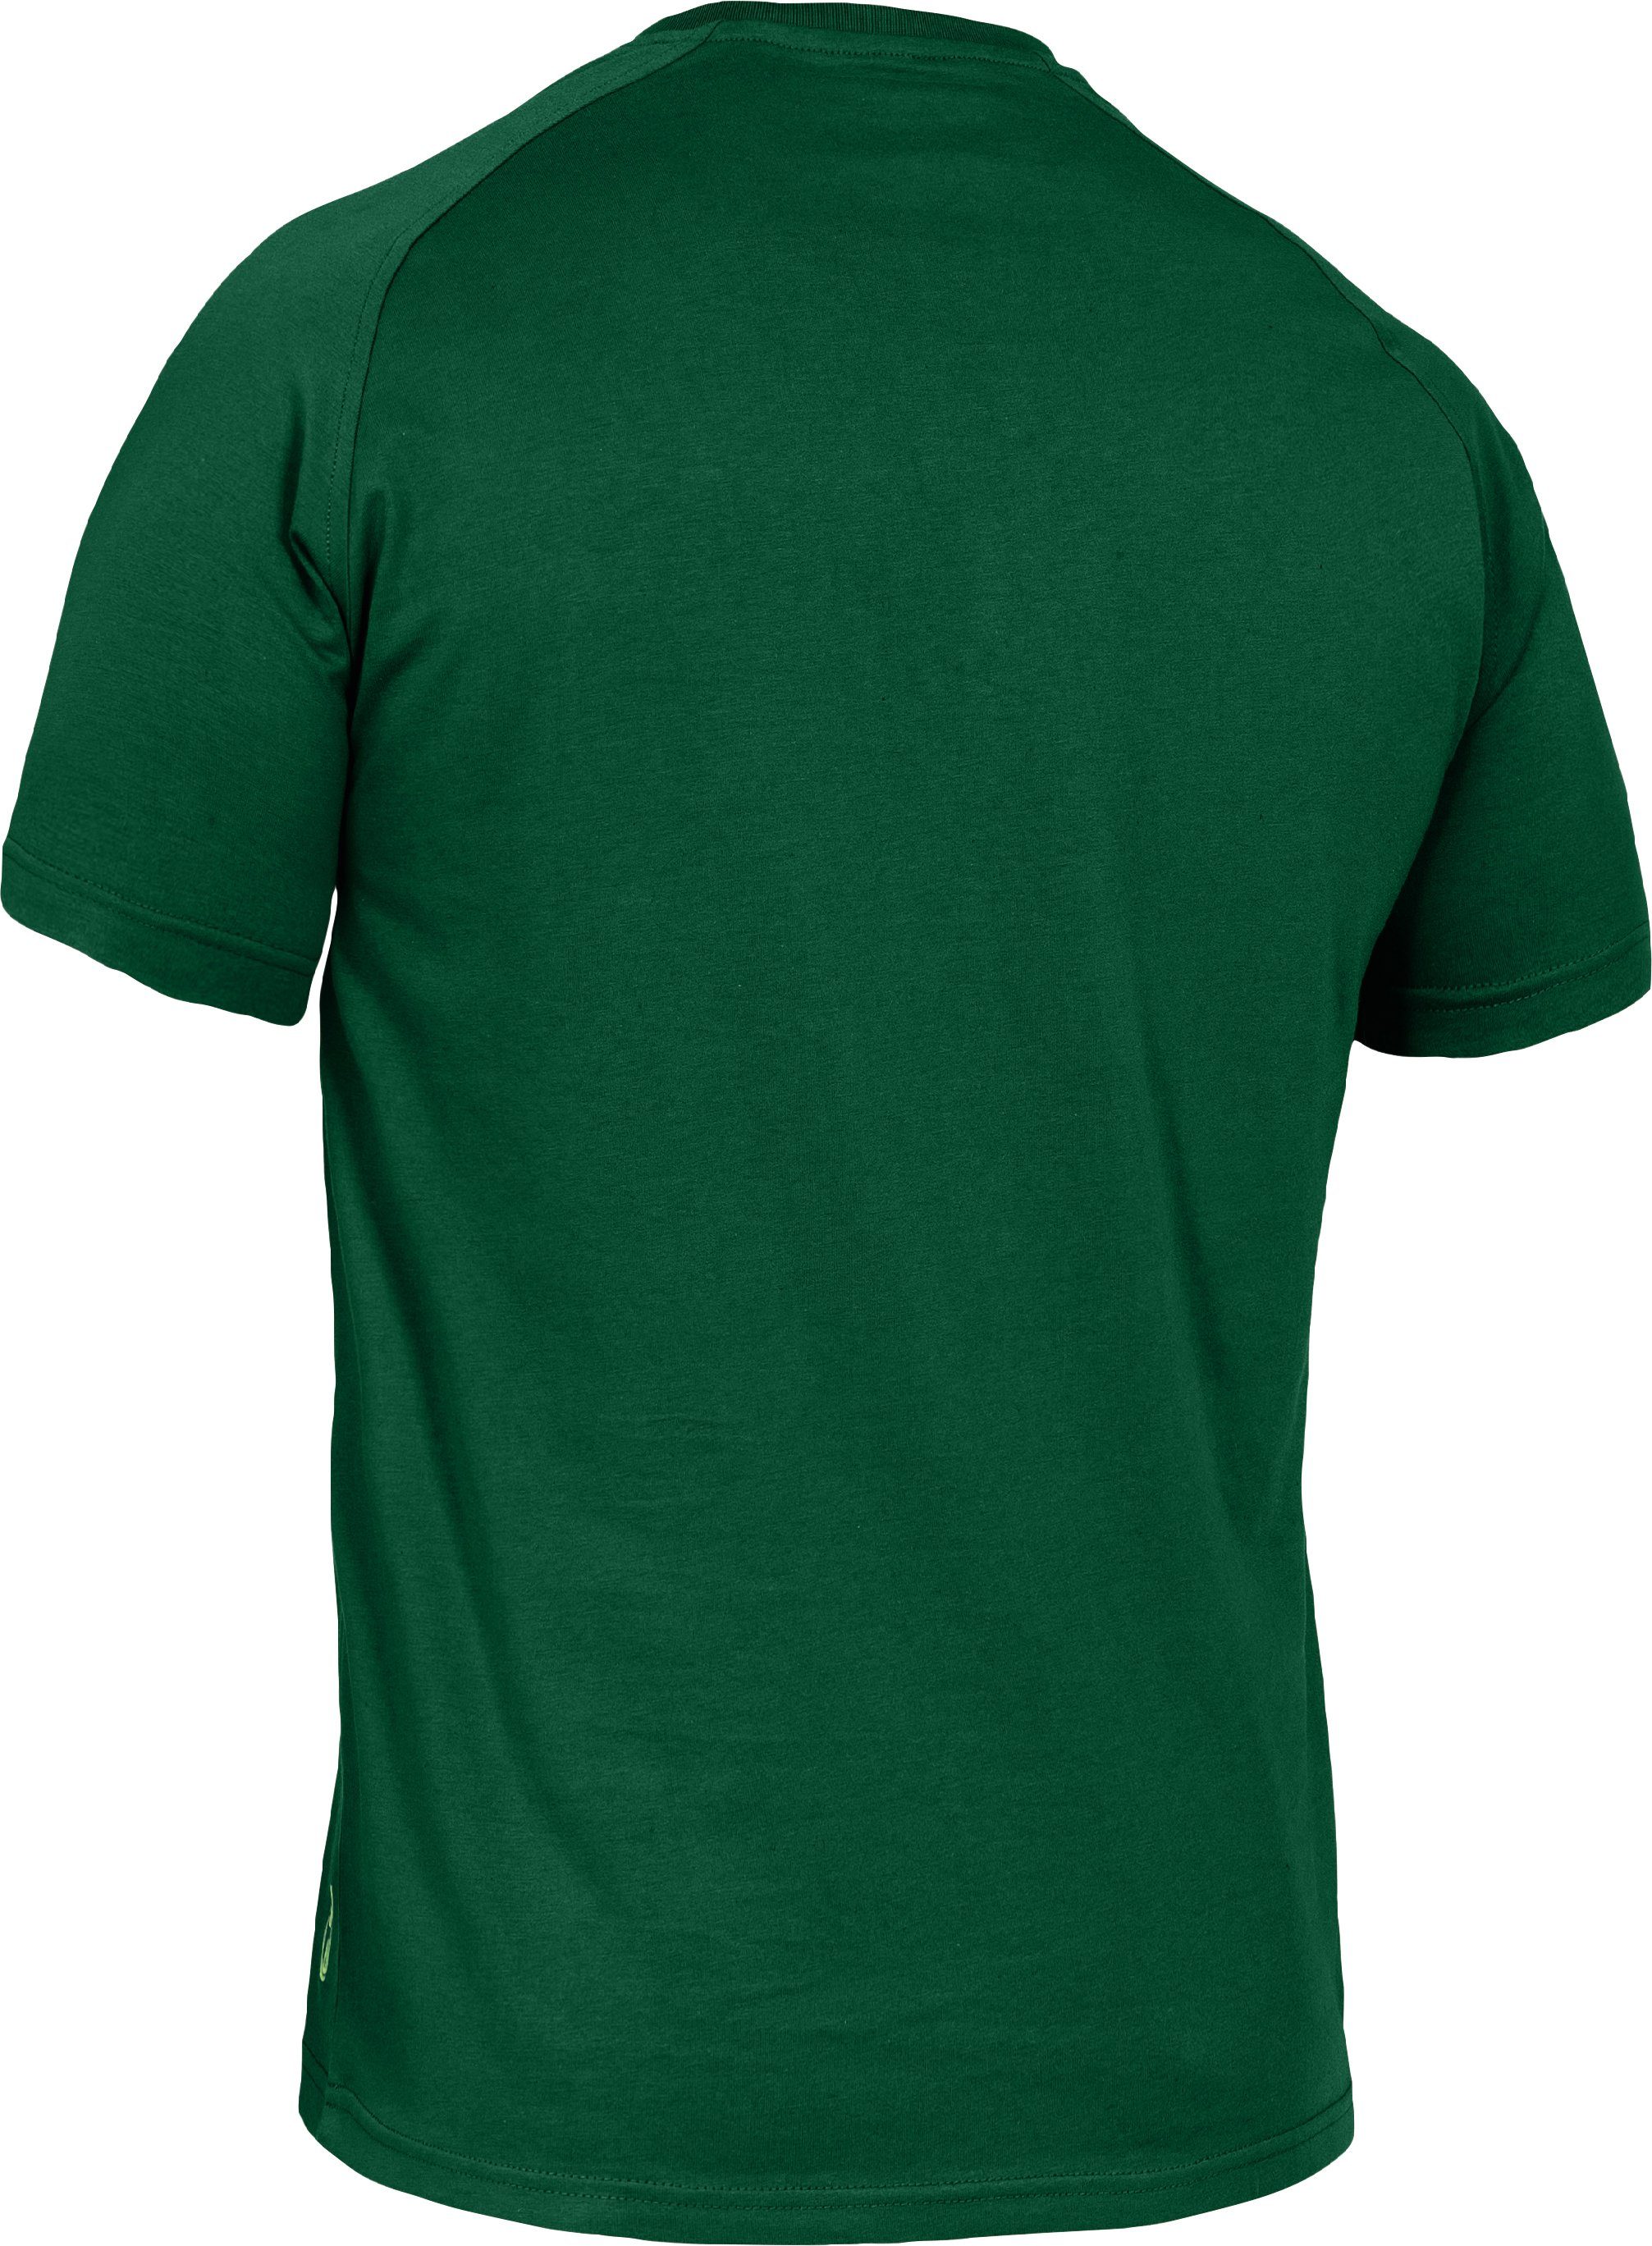 Herren T-Shirt grün T-Shirt Flex-Line Leibwächter